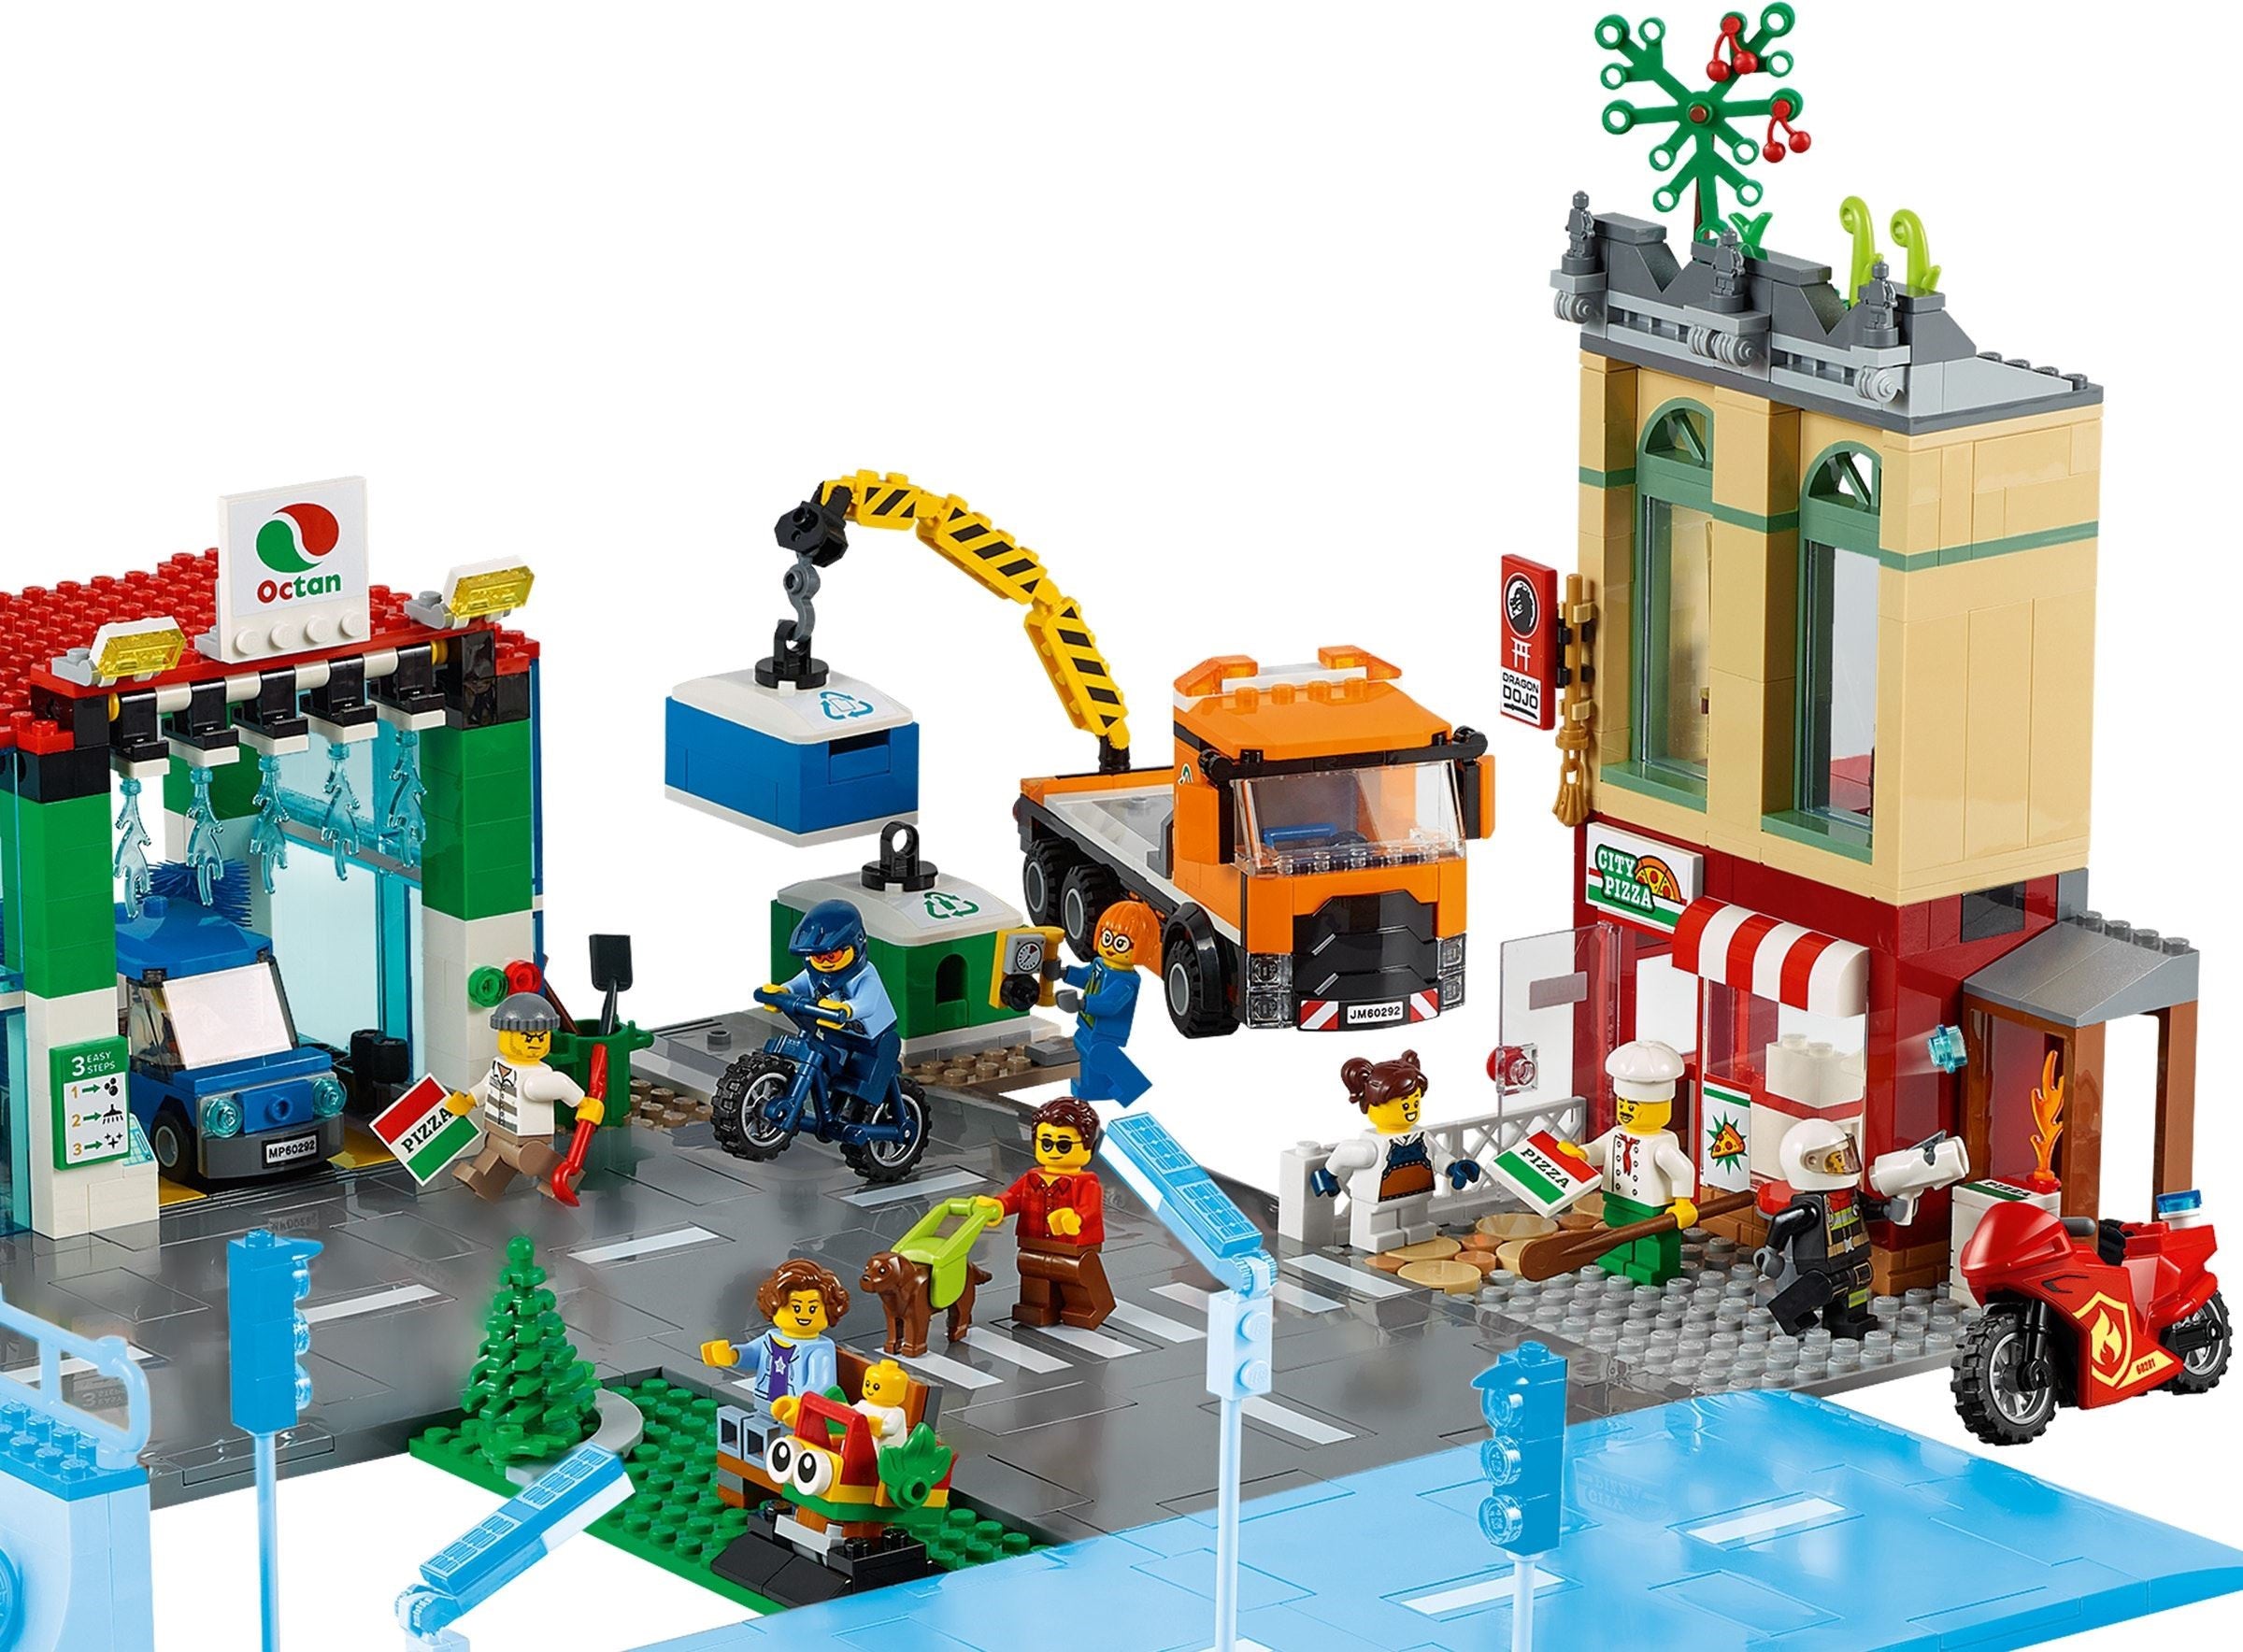 LEGO 60292 Town Centre